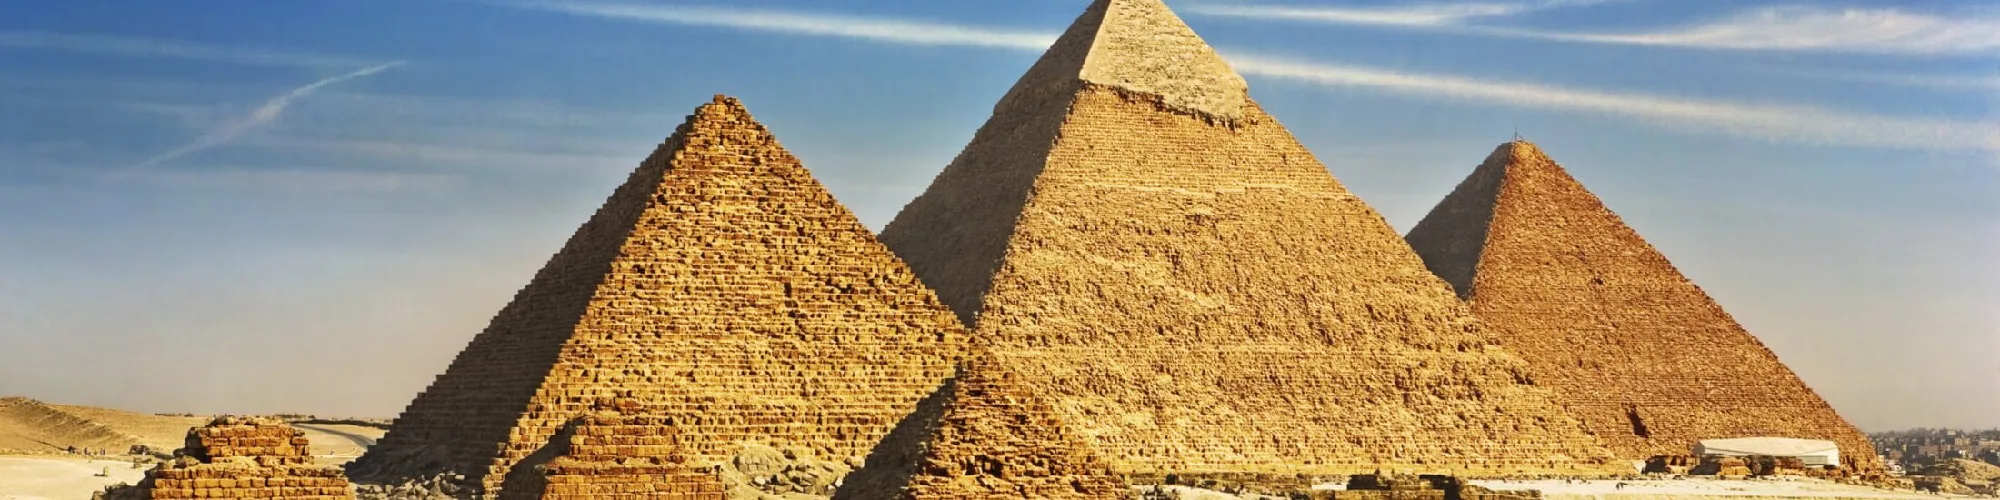 Zeit für Urlaubsgefühle in Ägypten background image